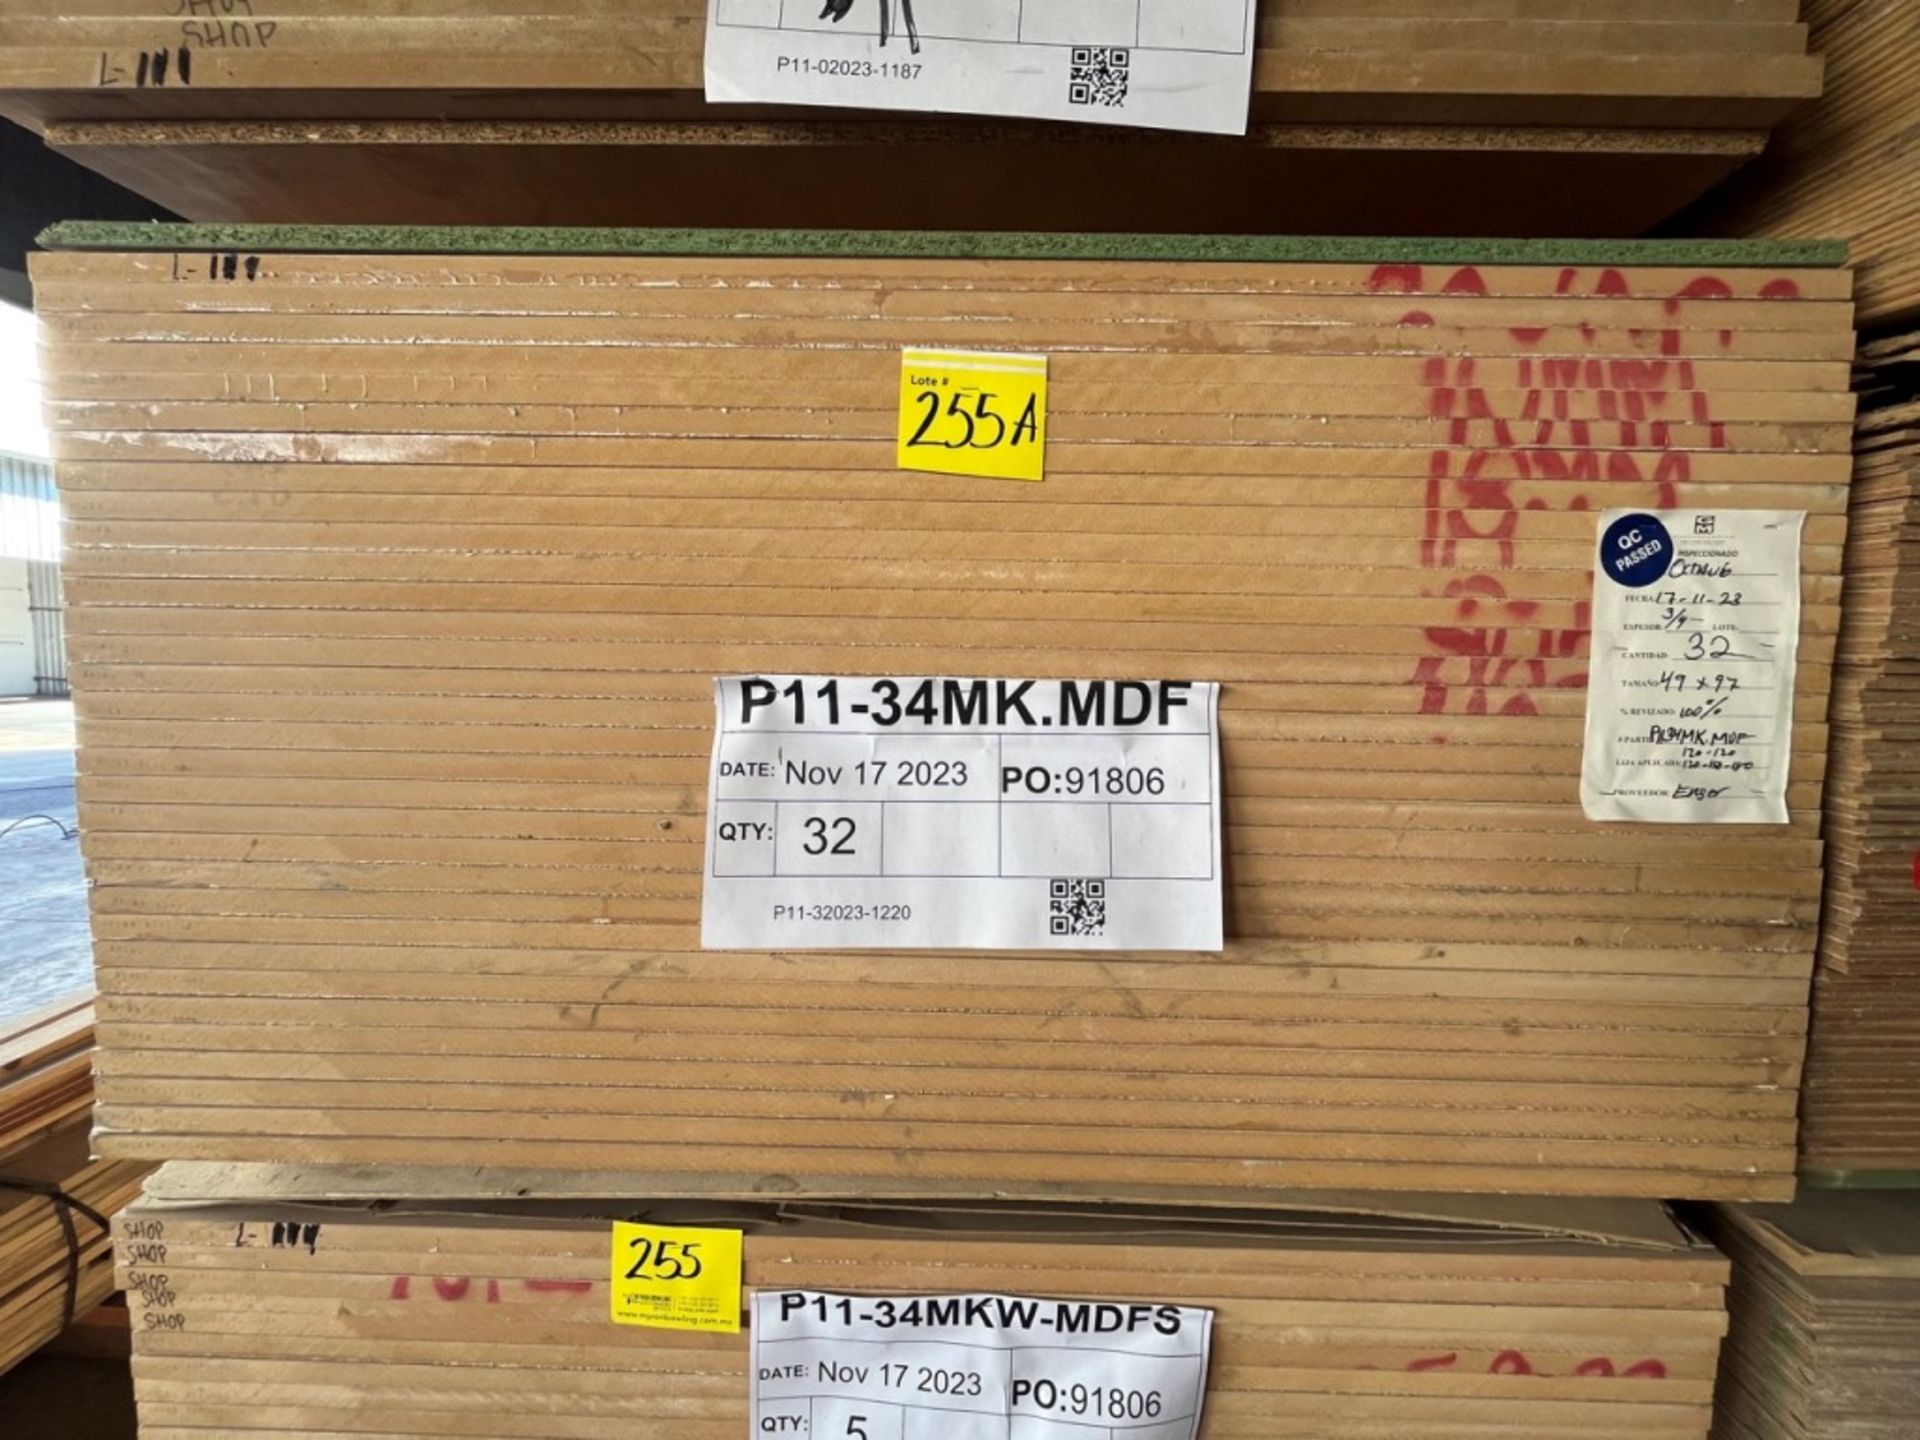 Lot of 32 pieces of wood in 3/4 MK.MDF material measuring 4 x 8 ft. / (NUEVO) Lote de 32 piezas de